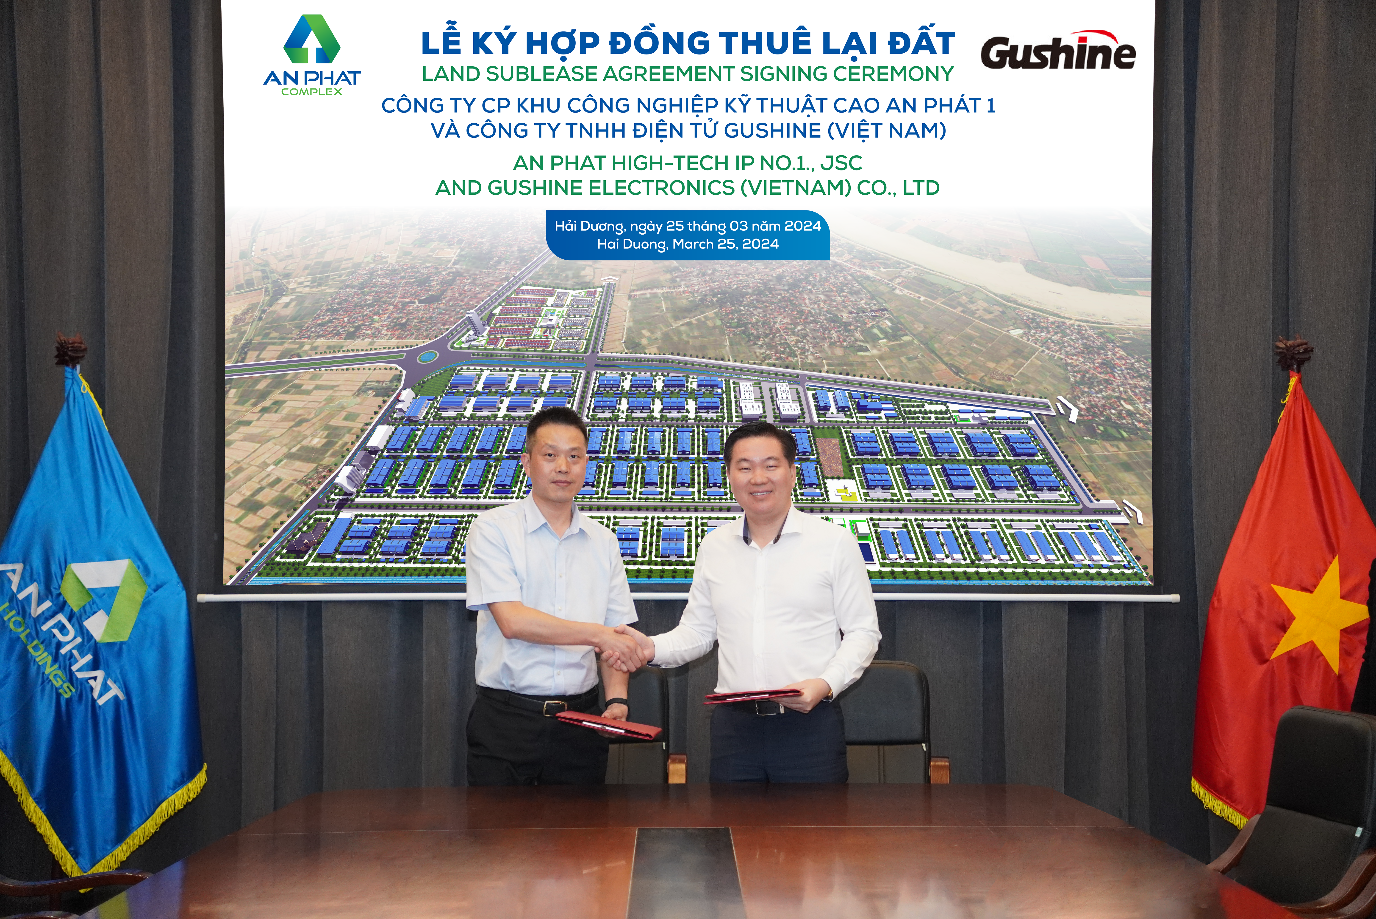 Dự án công ty TNHH điện tử Gushine (Việt Nam)